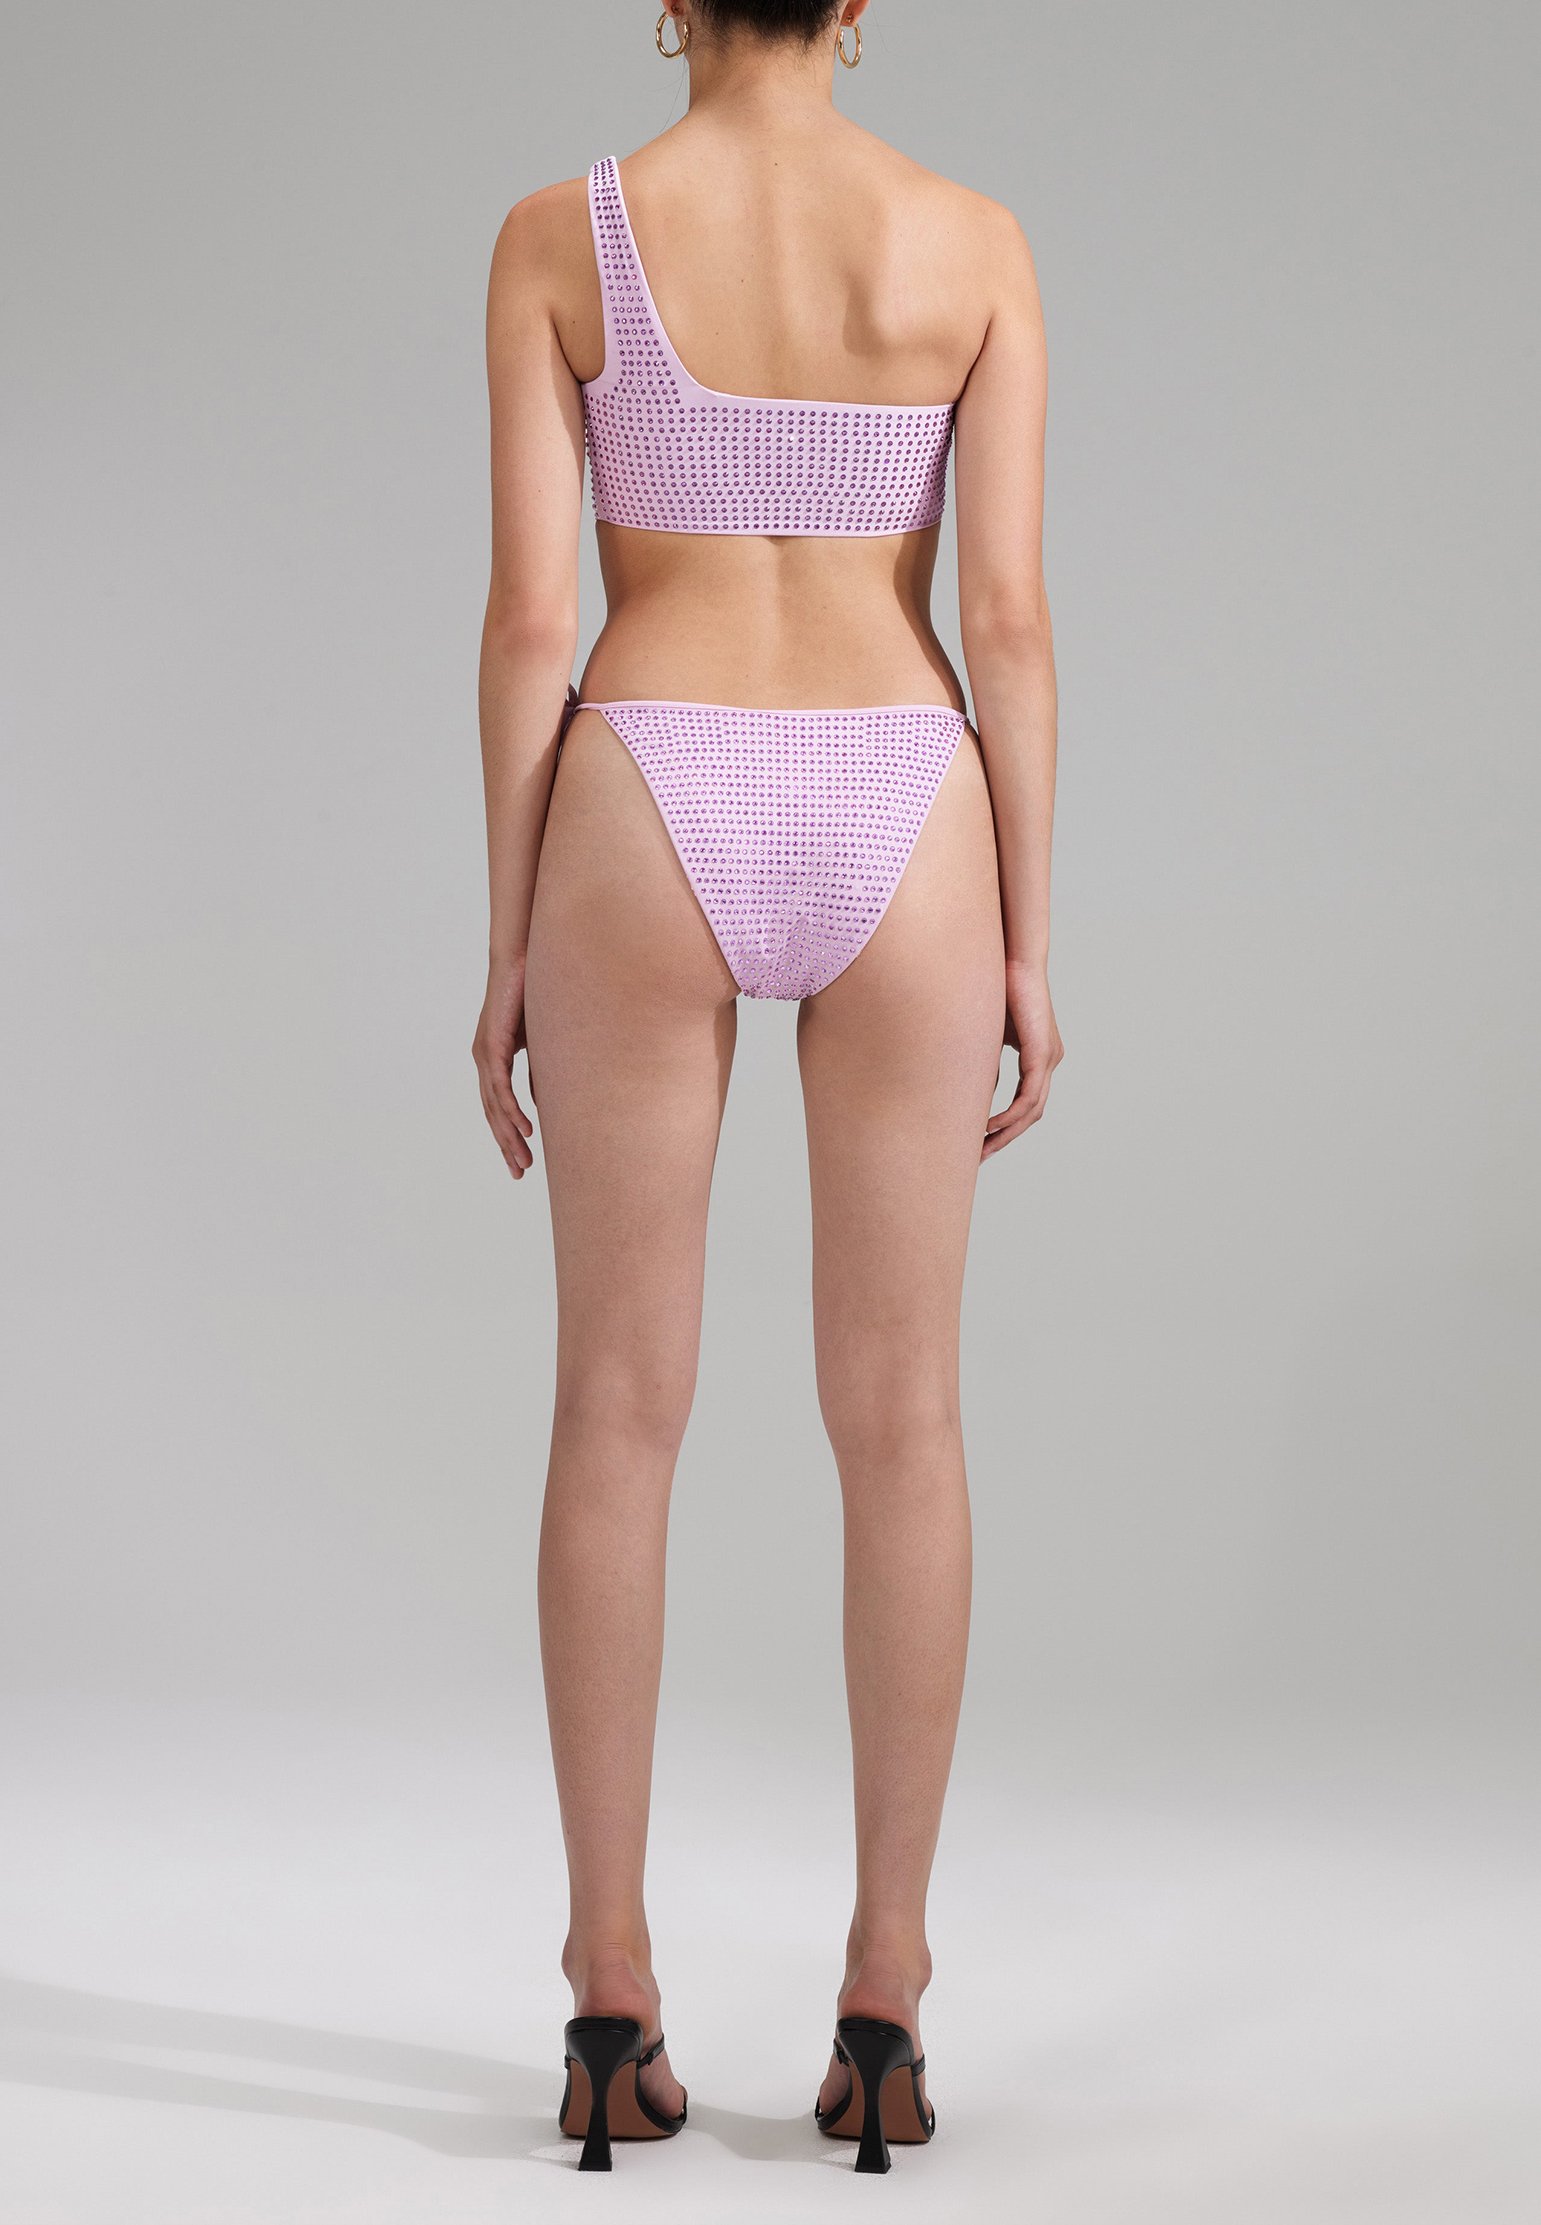 Bikini bottoms SELF-PORTRAIT Color: lilac (Code: 1767) in online store Allure